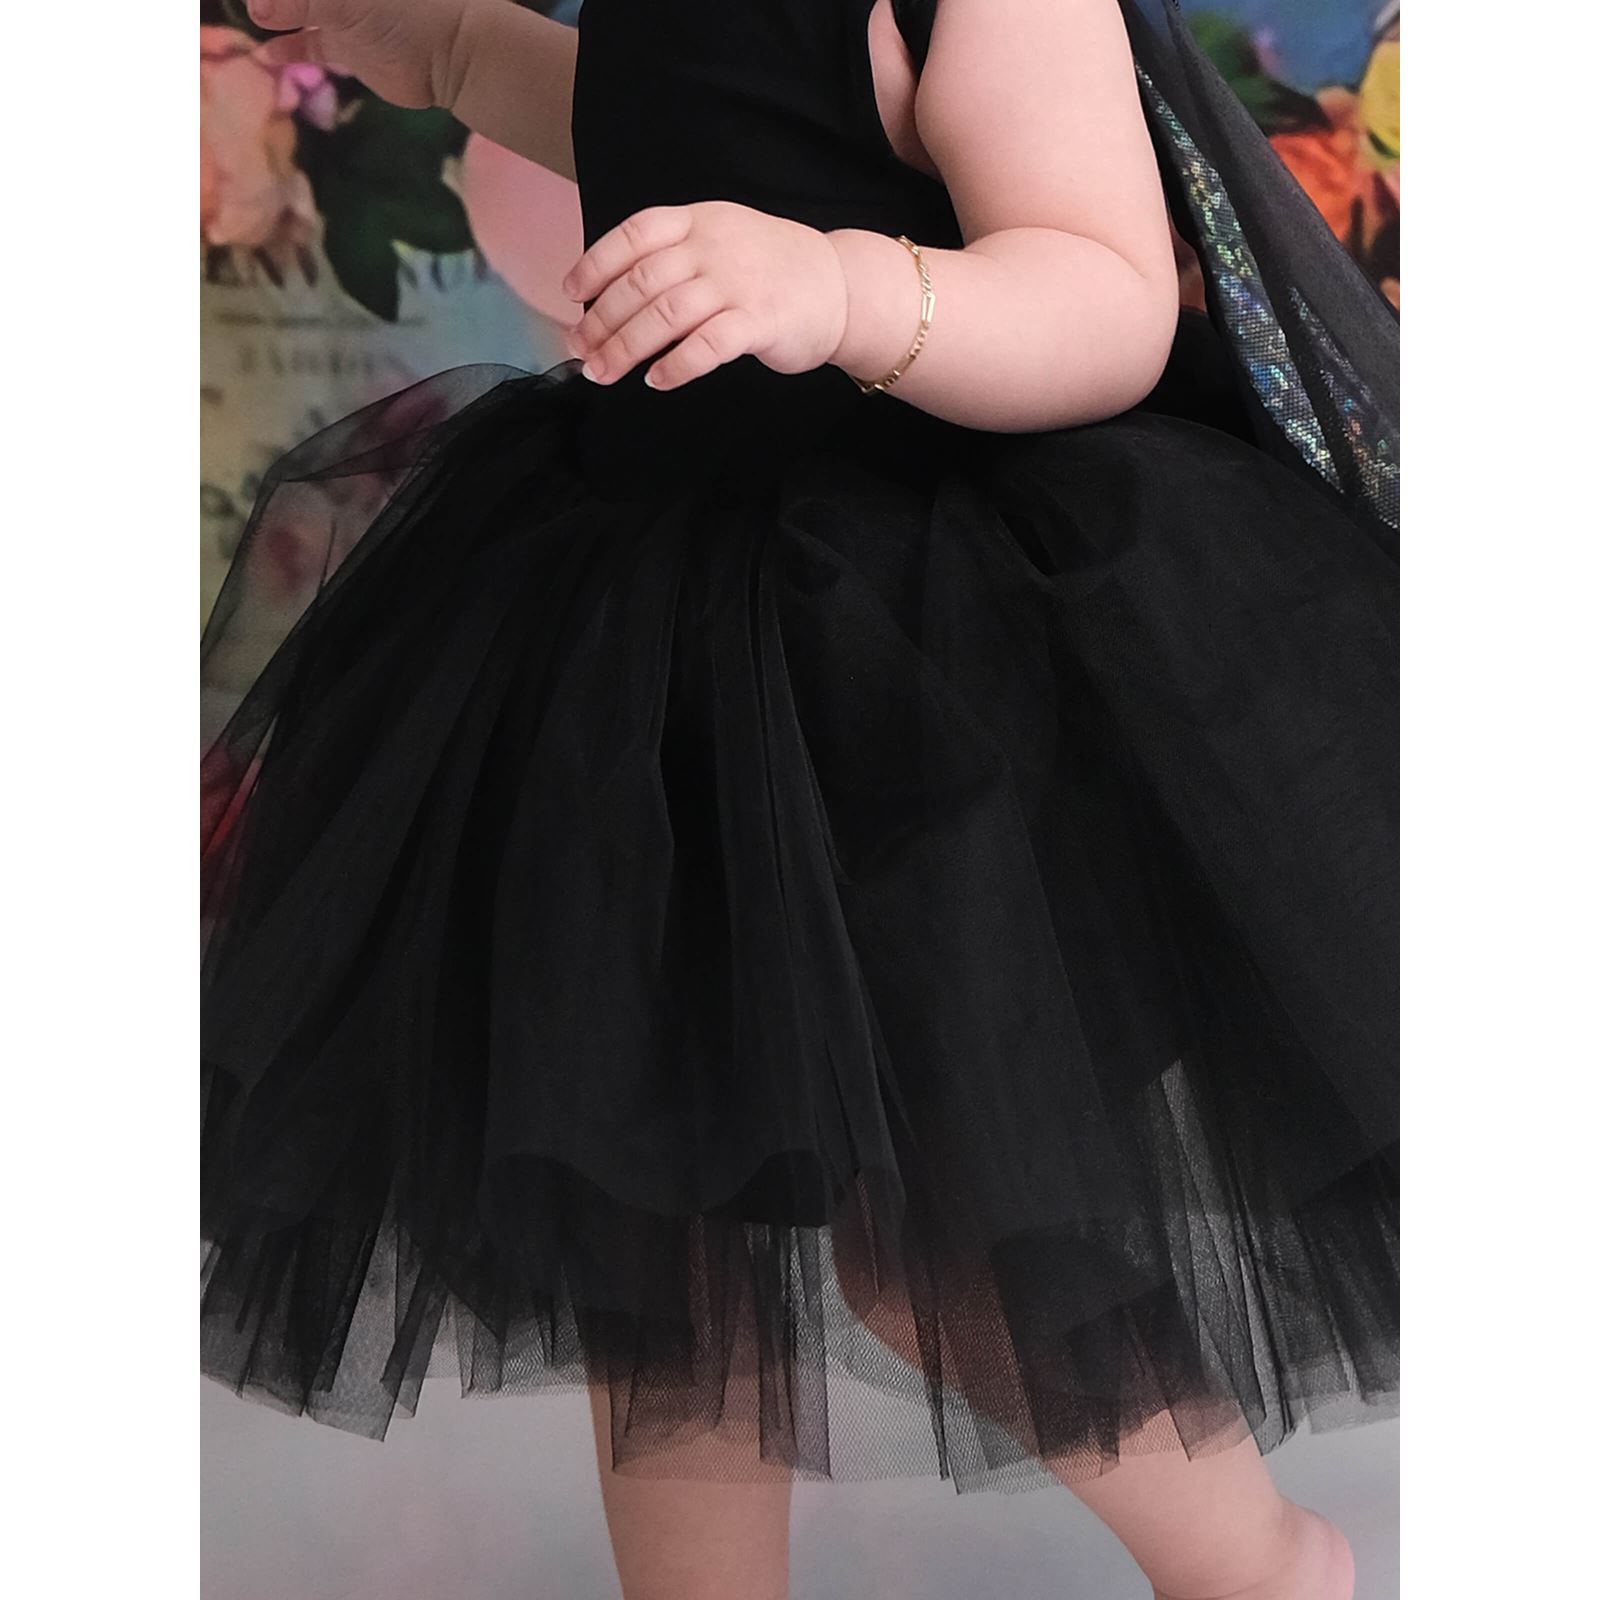 Shecco Babba Balerin Model Kız Çocuk Tütü Elbise, Pon Pon Bandana Takımı - Çocuk Abiye Elbise 1-5 Yaş Abiye Siyah